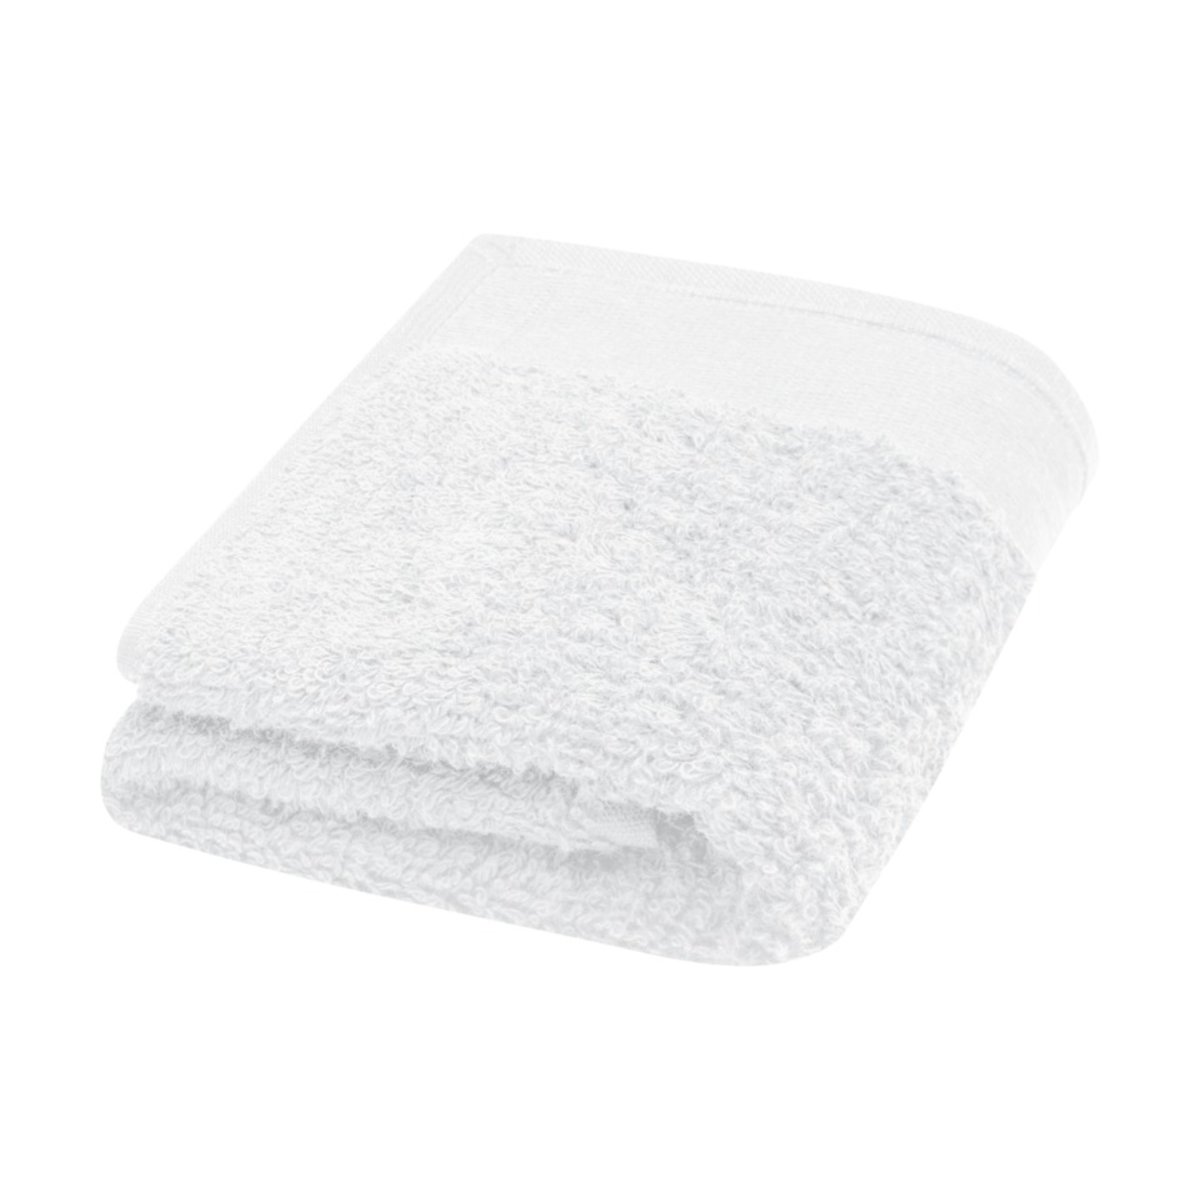 Chloe bawełniany ręcznik kąpielowy o gramaturze 550 g/m² i wymiarach 30 x 50 cm